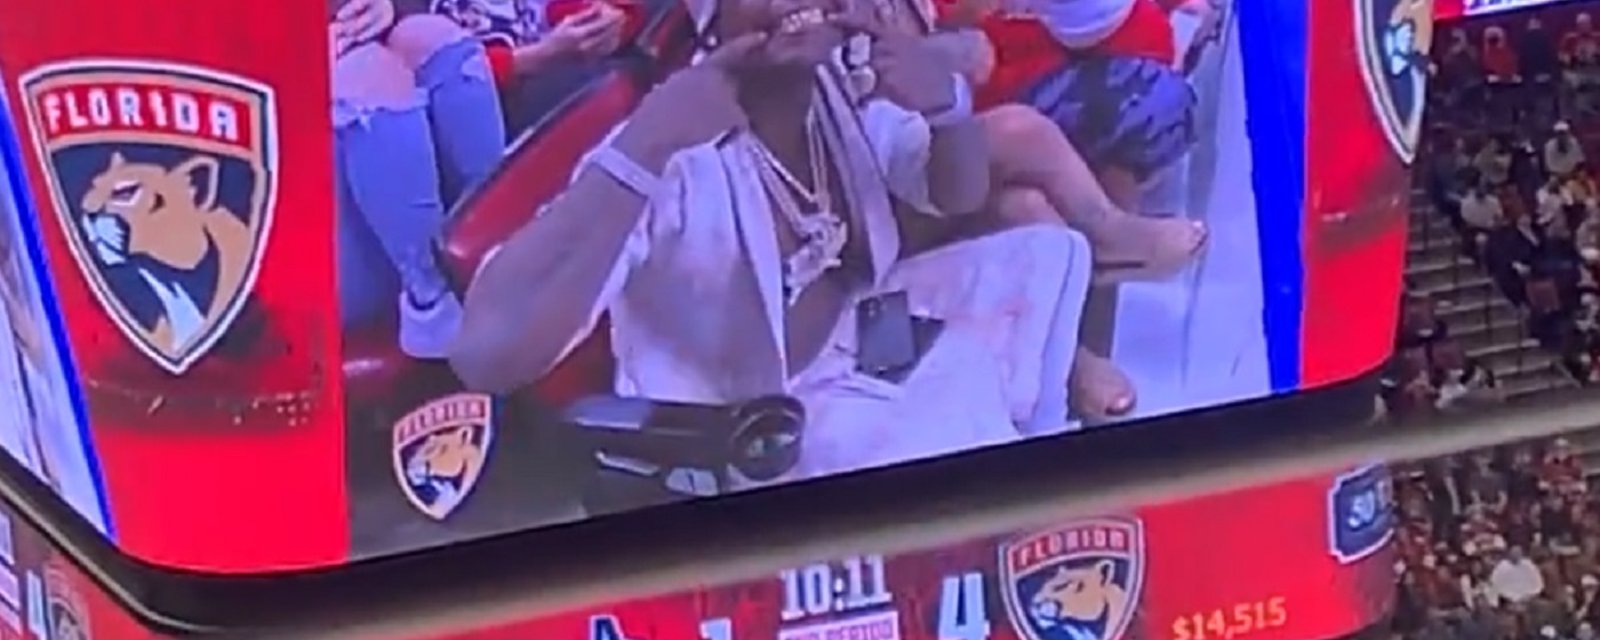 Le rapper Kodak Black filmé en plein ébats sexuels pendant un match des Panthers?